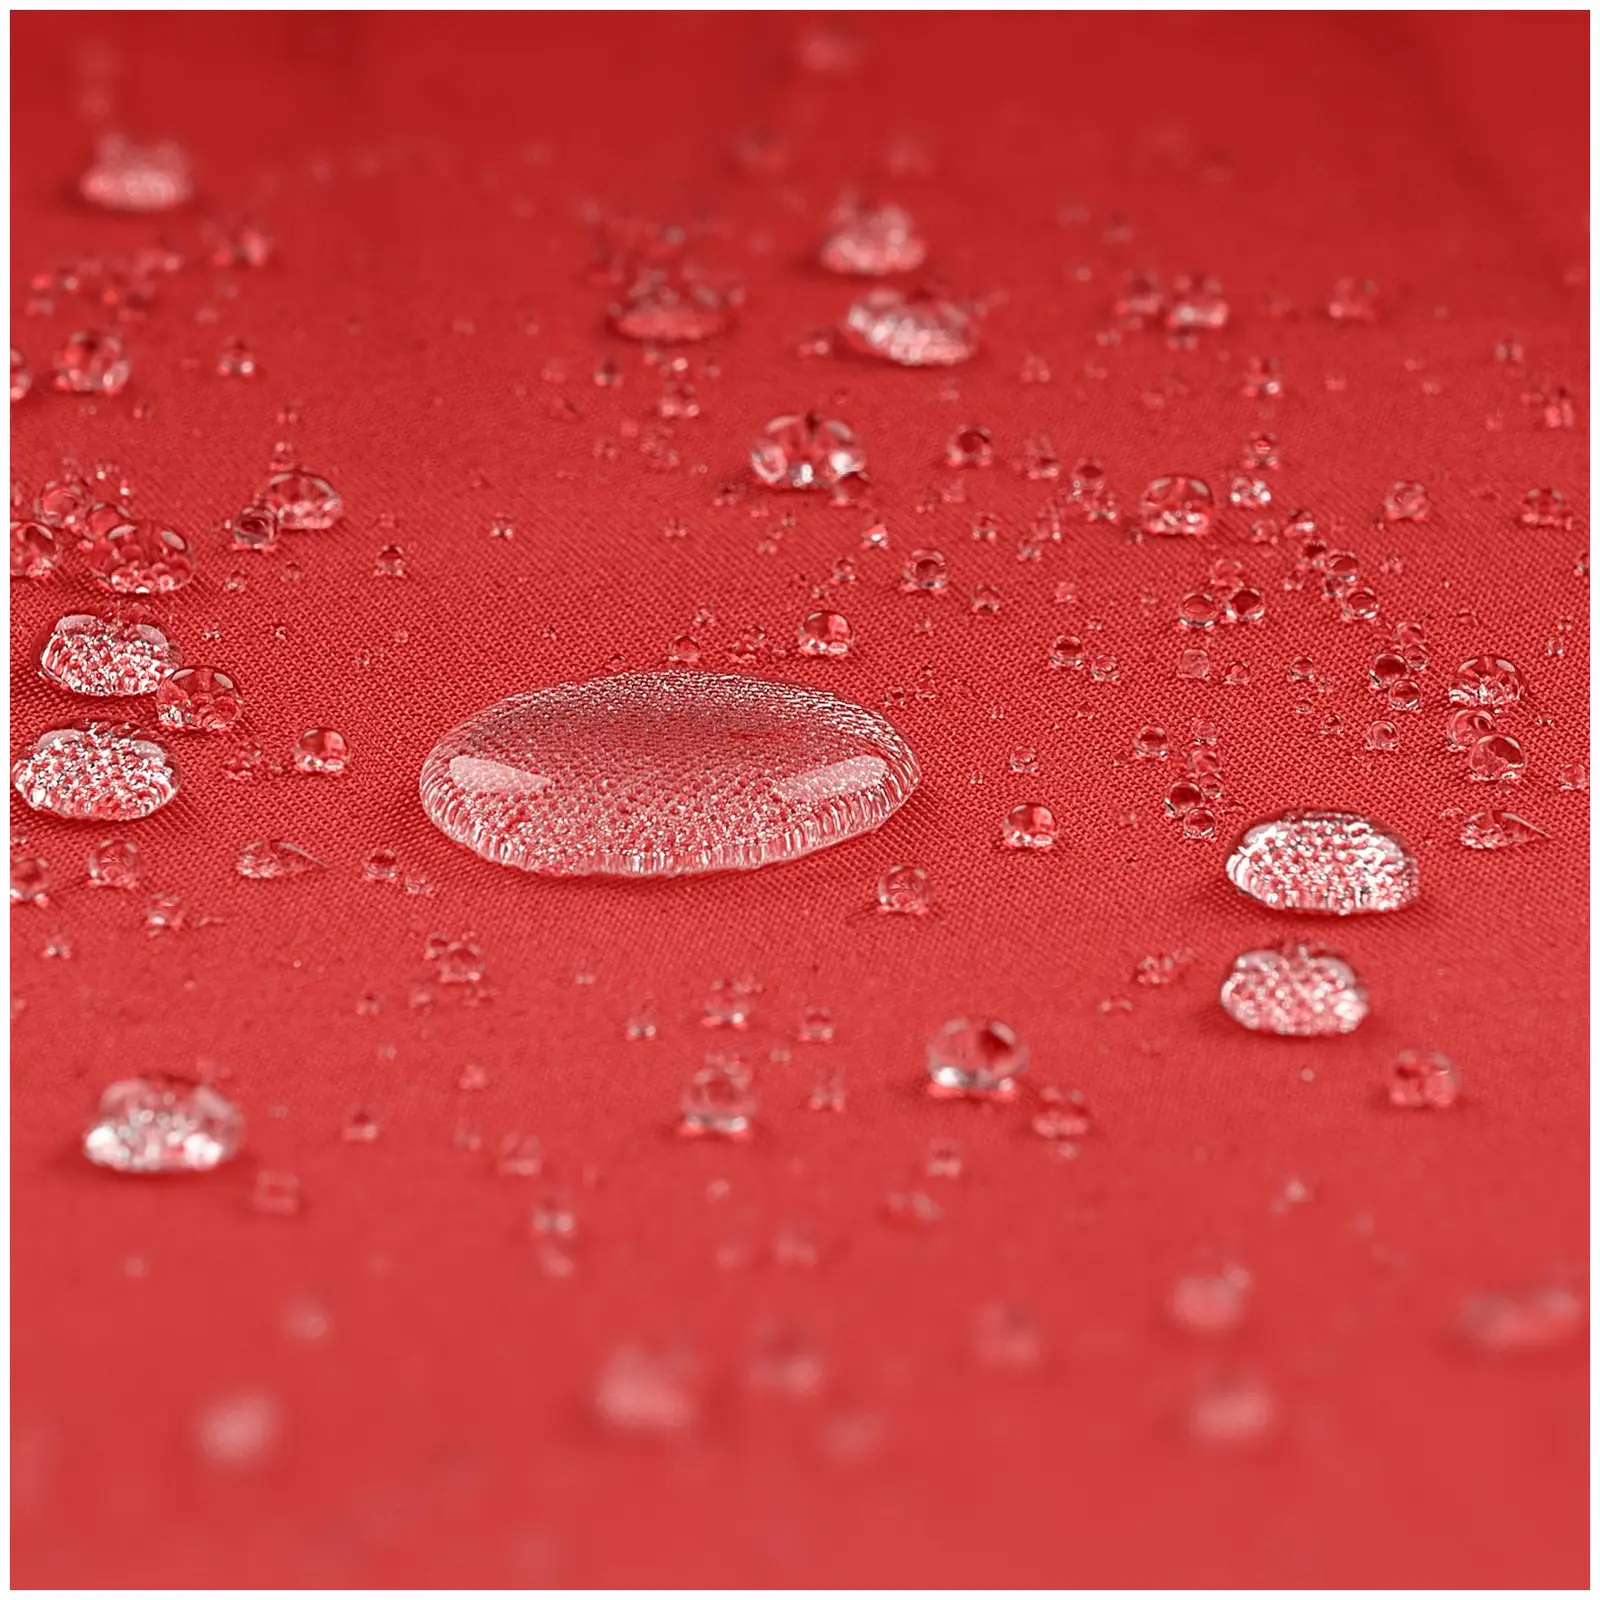 B-zboží Velký slunečník - červený - obdélníkový - 200 x 300 cm - s náklonem